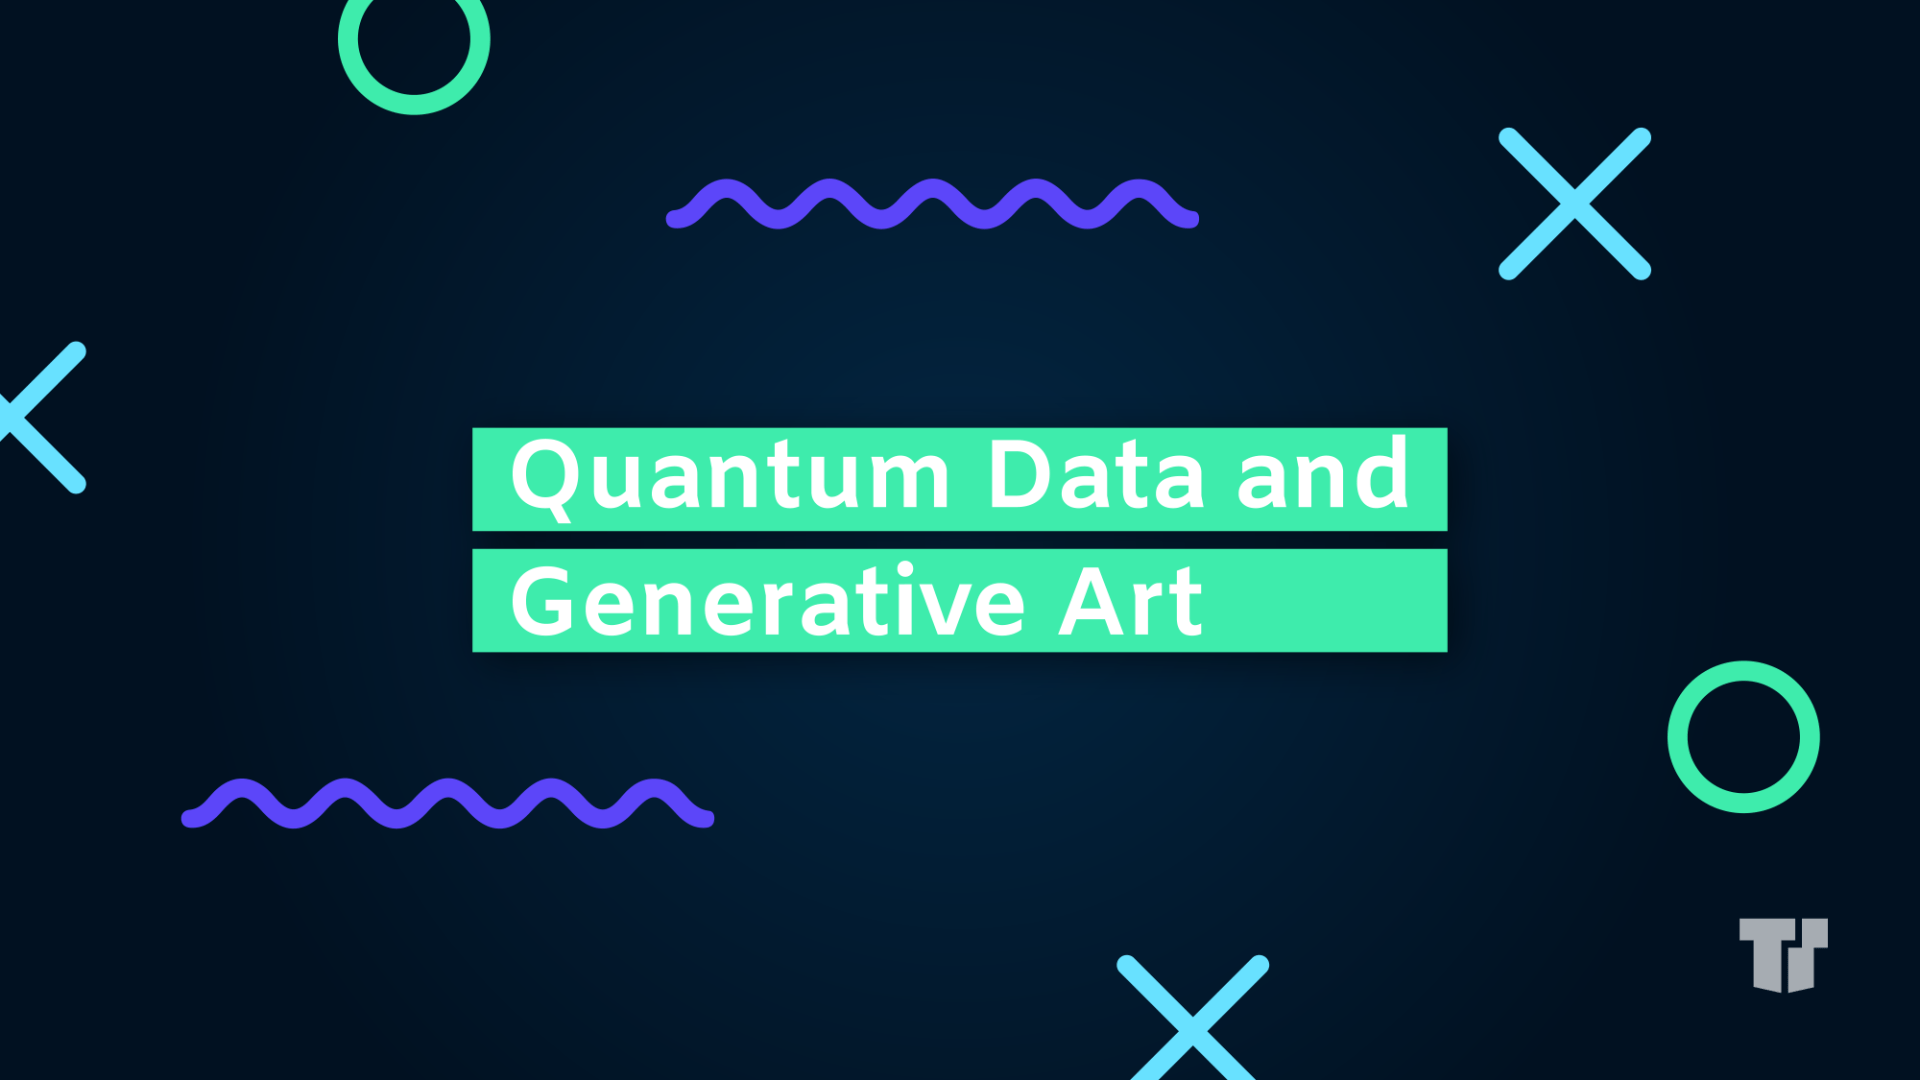 The Art of Quantum Data cover image